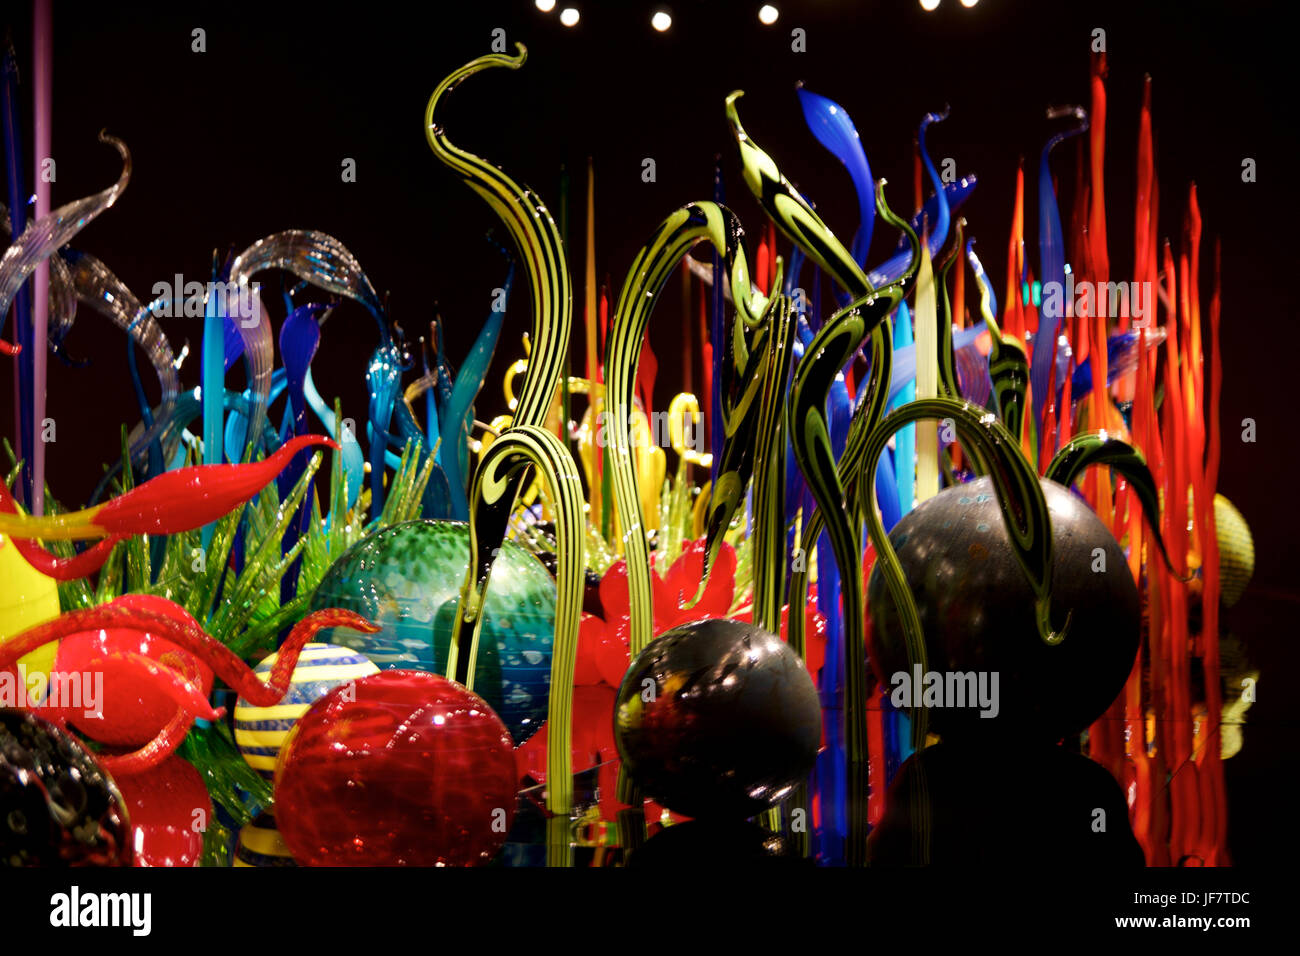 SEATTLE, WASHINGTON, USA - 23. Januar 2017: Glasbläserei in abstrakten Formen der Blumen in rot und gelb, ausstellen von amerikanischen Künstler Dale Chihuly im Chihuly Garden und Glasmuseum Stockfoto